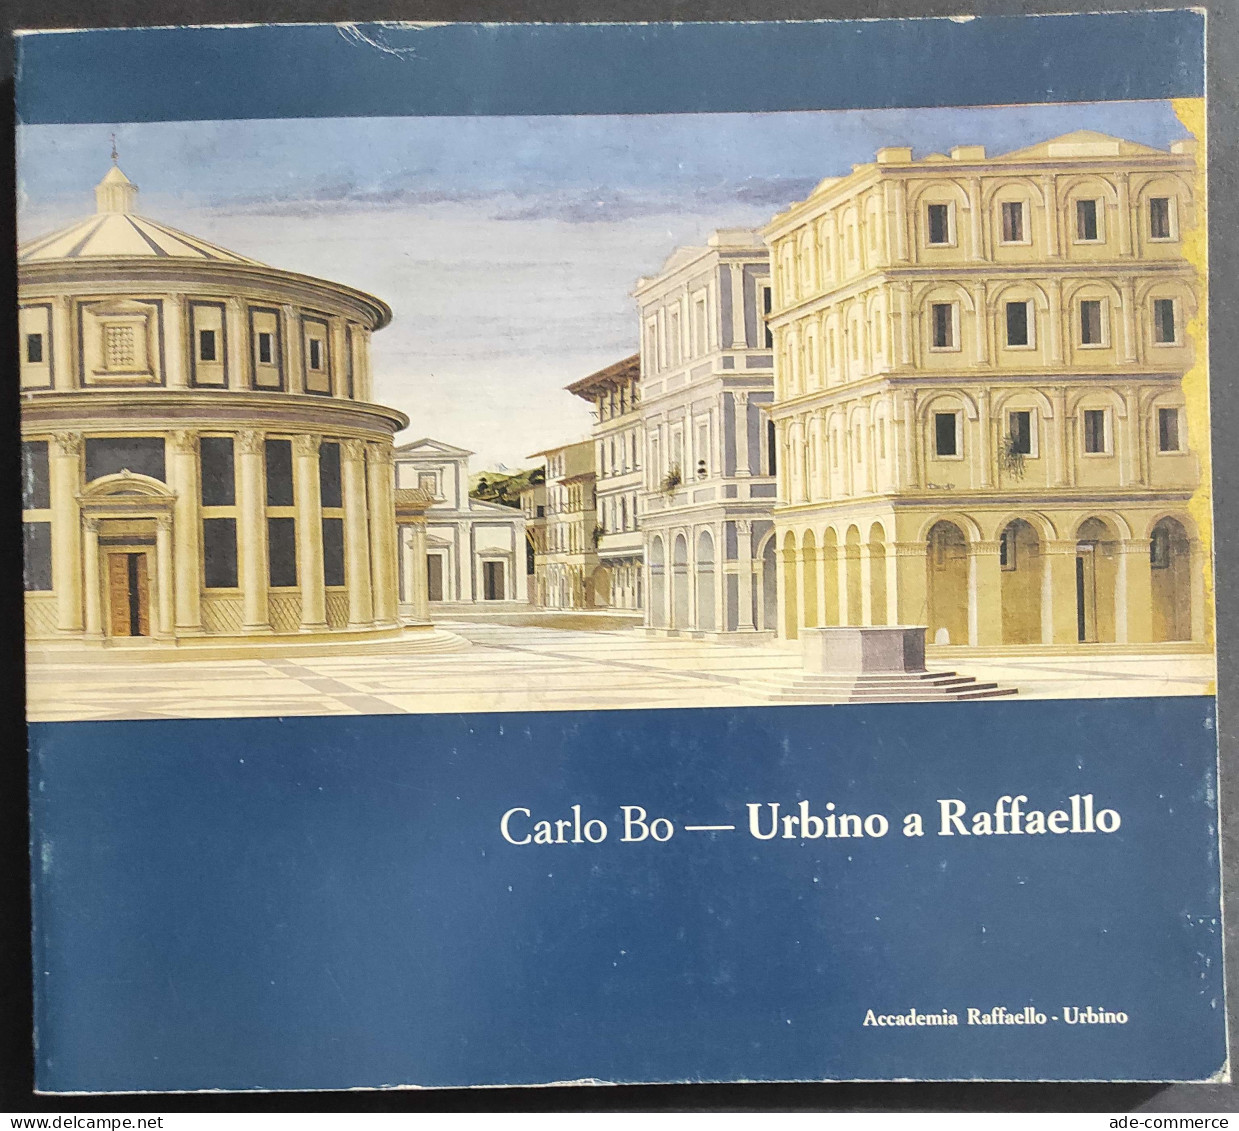 Urbino A Raffaello - C. Bo - 1985 - Accademia Raffaello Urbino 1984                                                      - Arts, Antiquity